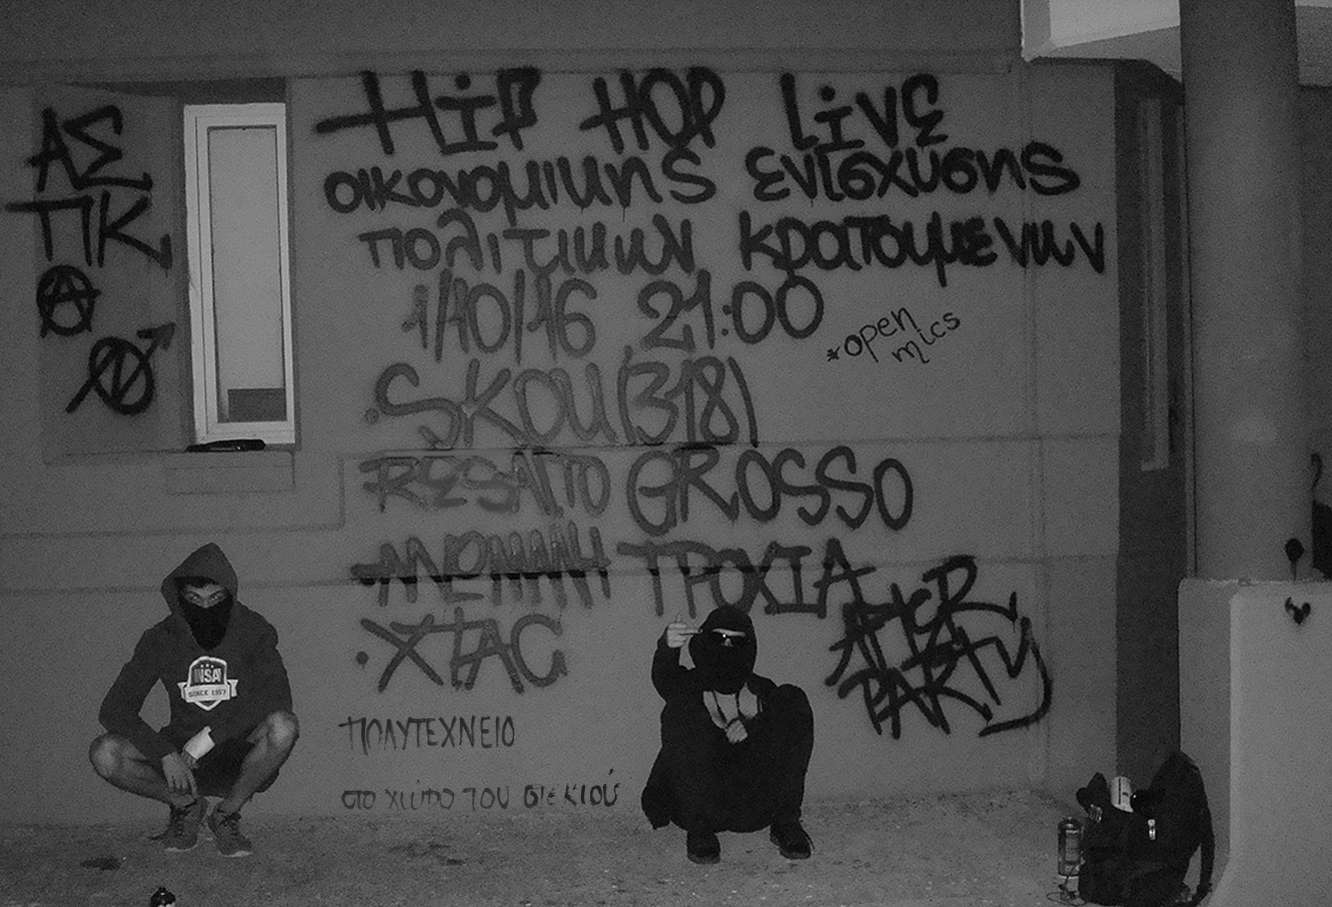 Χανιά: Hip Hop Live οικ. ενίσχυσης πολιτικών κρατουμένων [Σάββατο 01/10, 21:00]